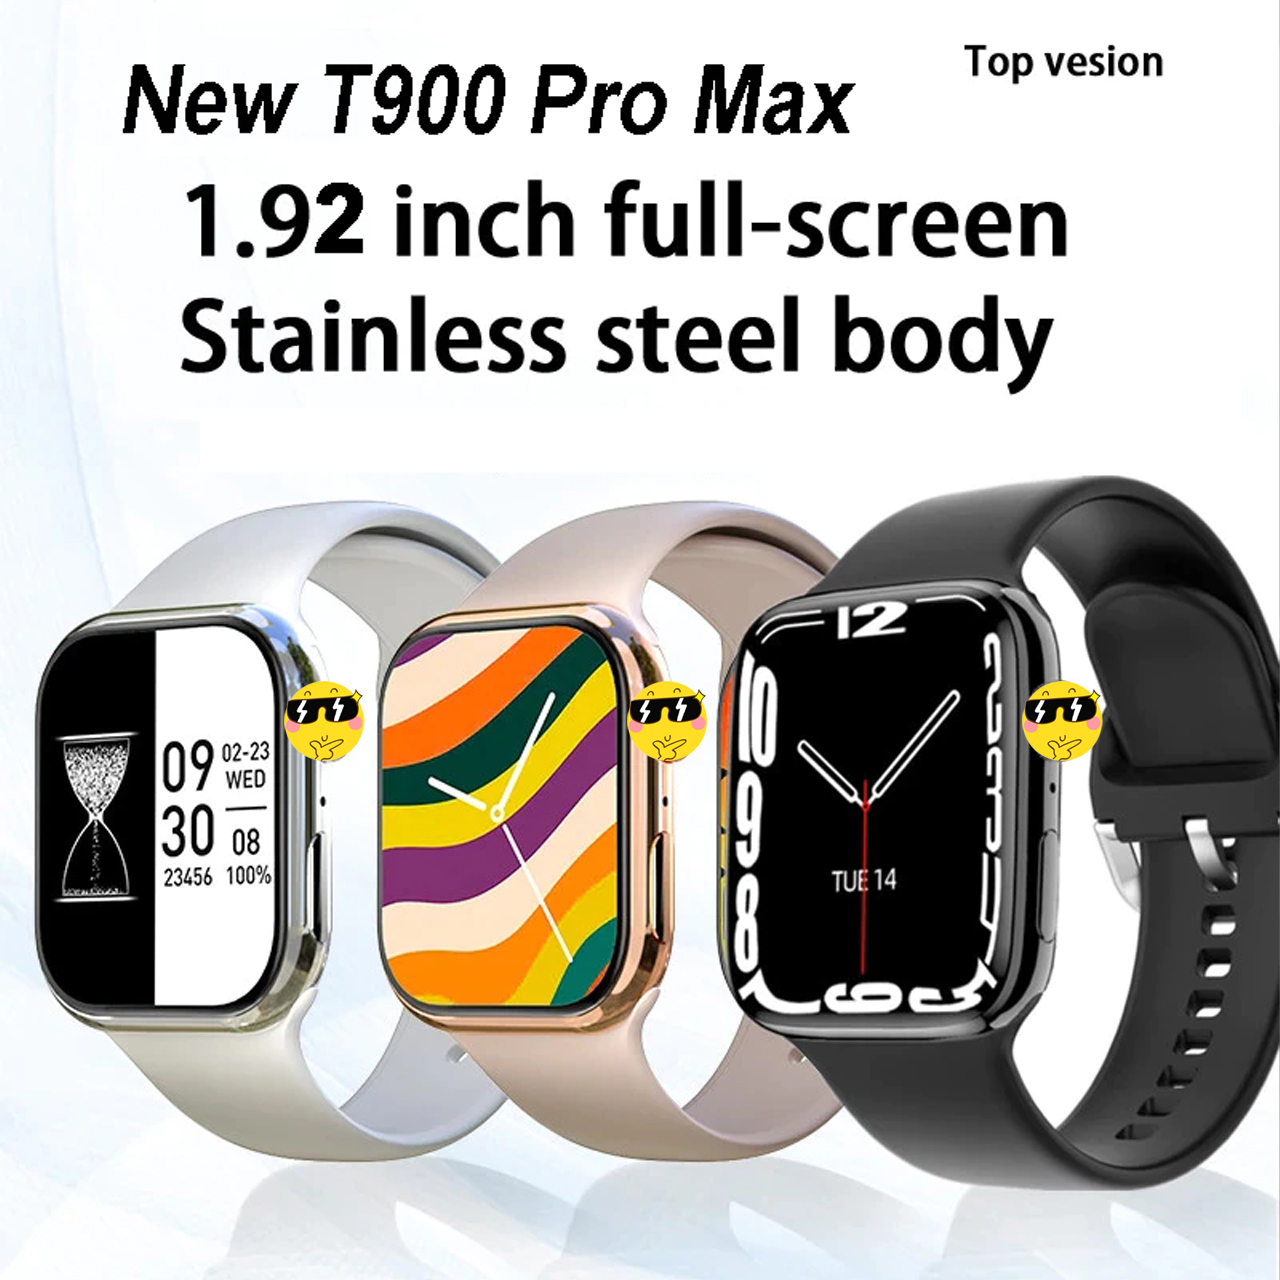 Đồng hồ thông minh T900 Pro Max Series 8 màn hình cảm ứng nghe nhận cuộc gọi bluetooth, theo dõi sức khoẻ đo nhịp tim huyếp áp - hàng chính hãng